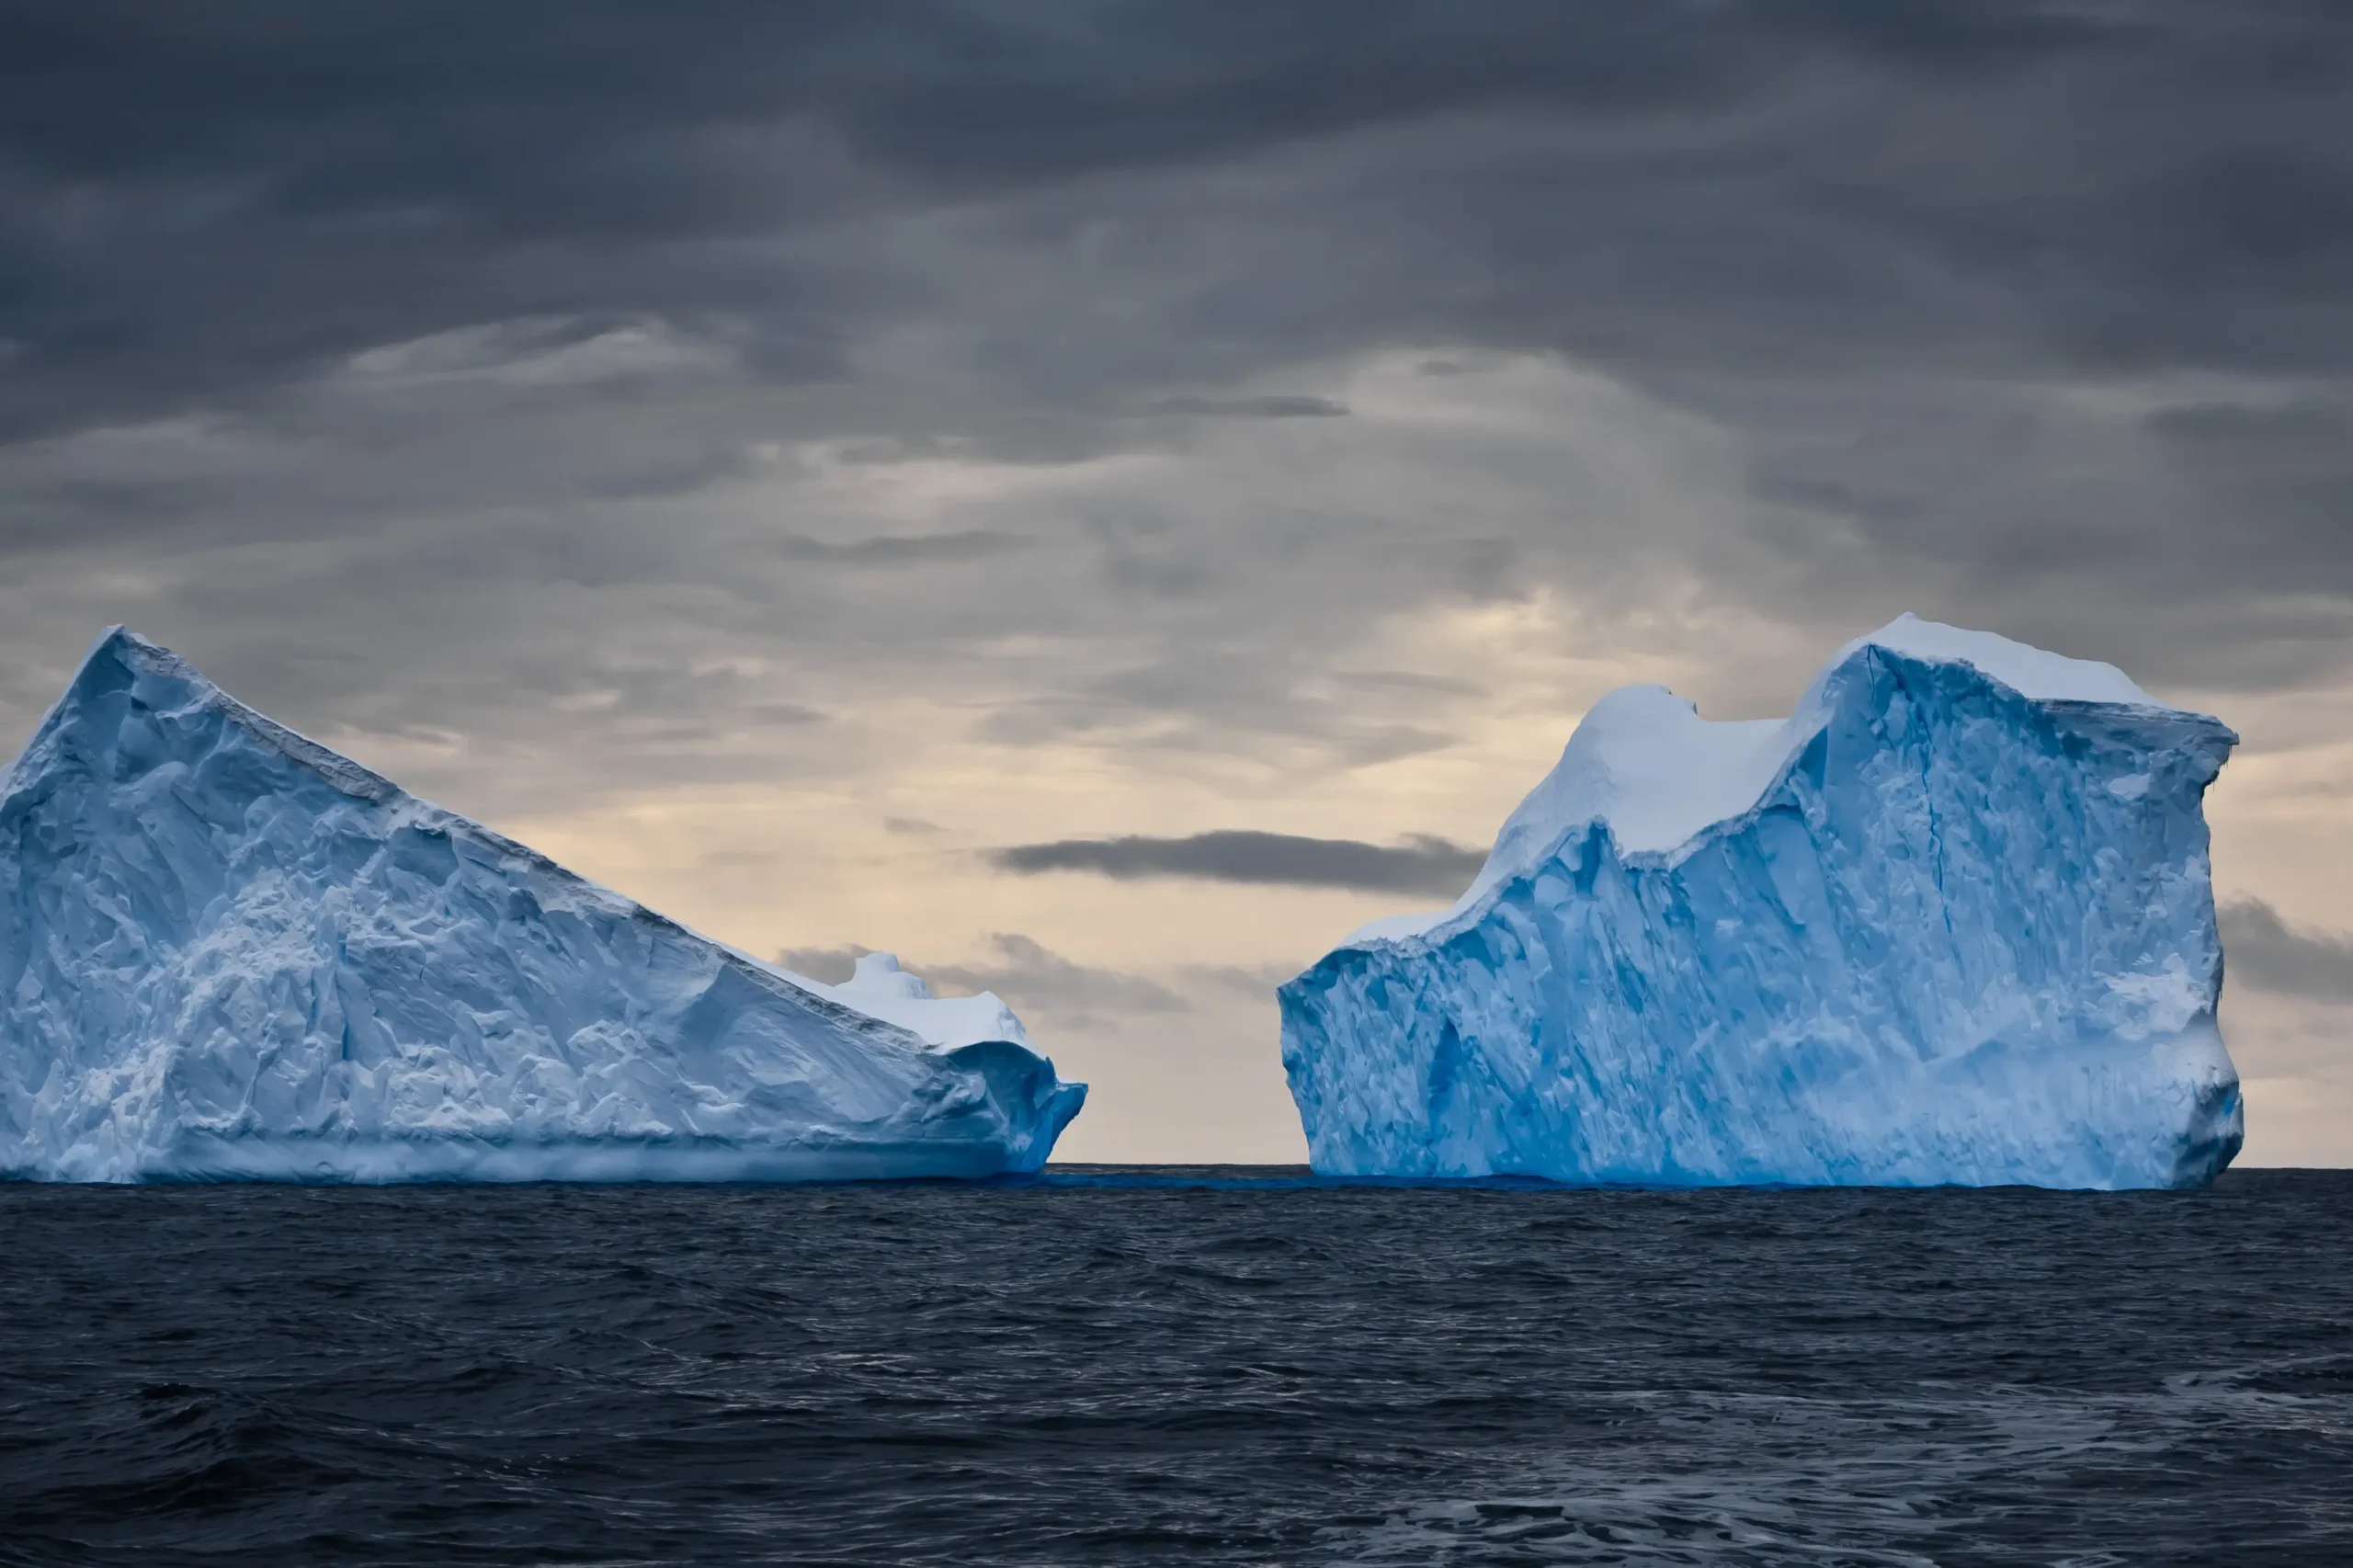 Antarctica iceberg A23a starts moving into the open ocean